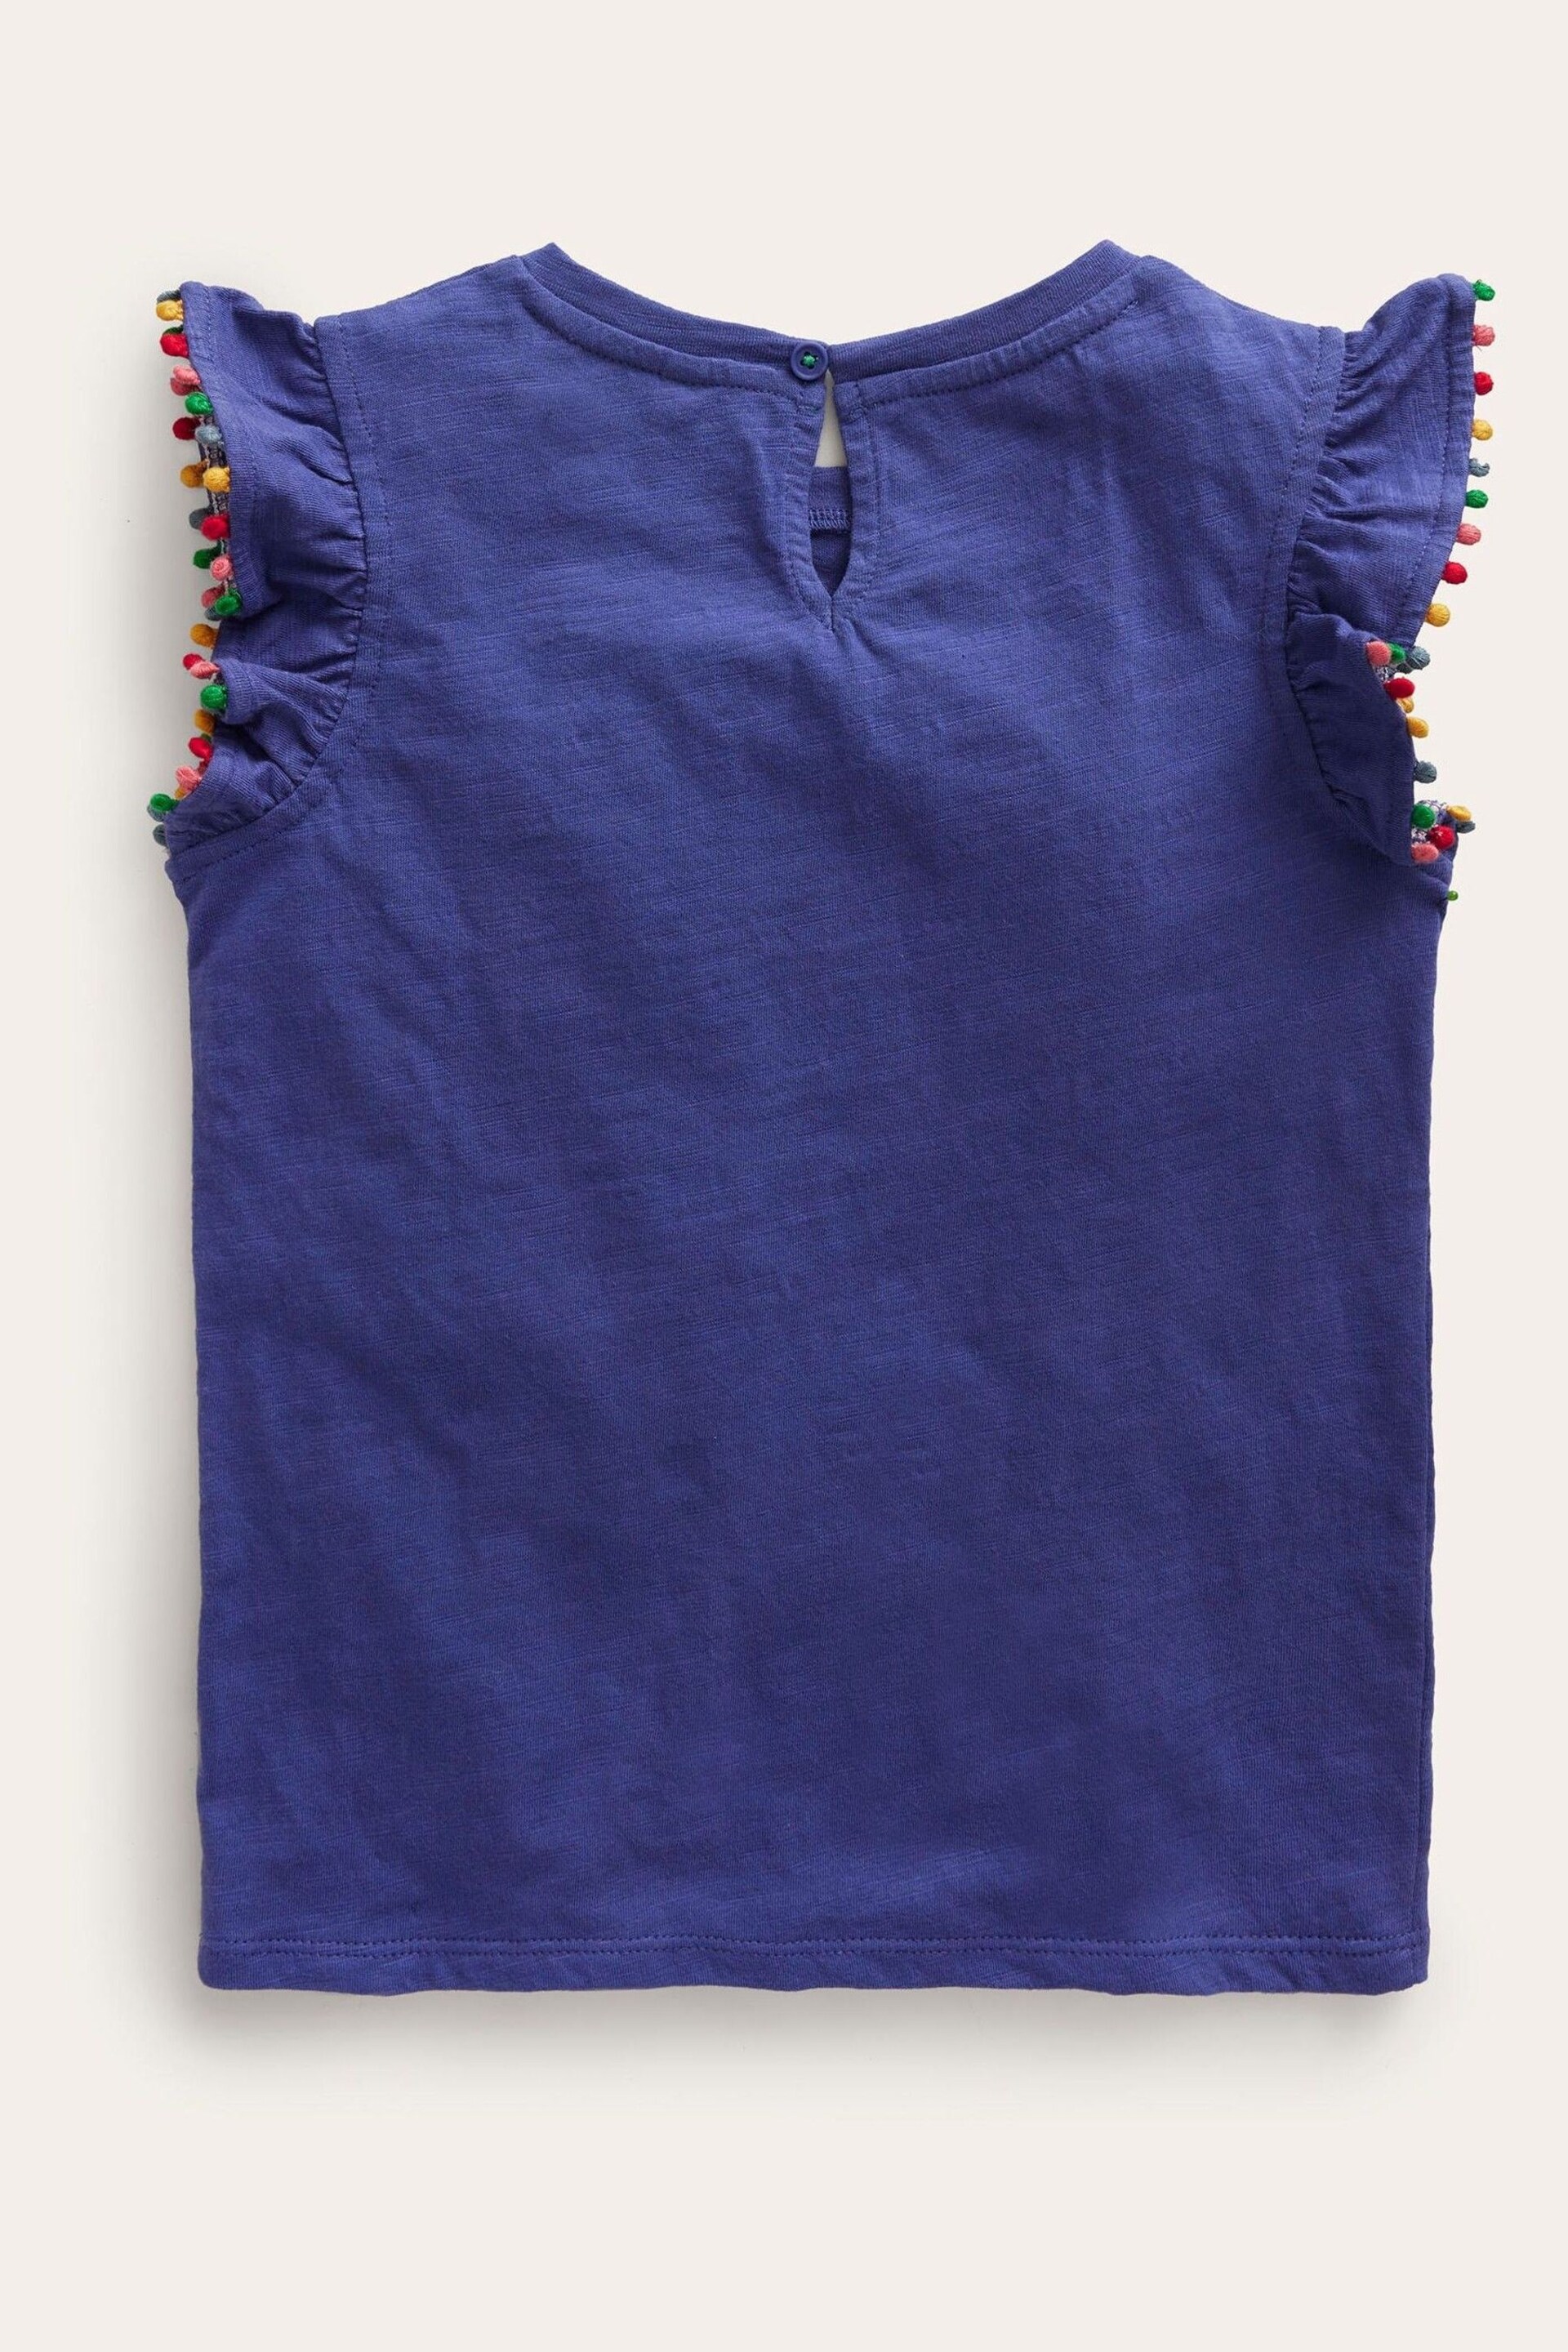 Boden Blue Pom Trim T-Shirt - Image 3 of 4